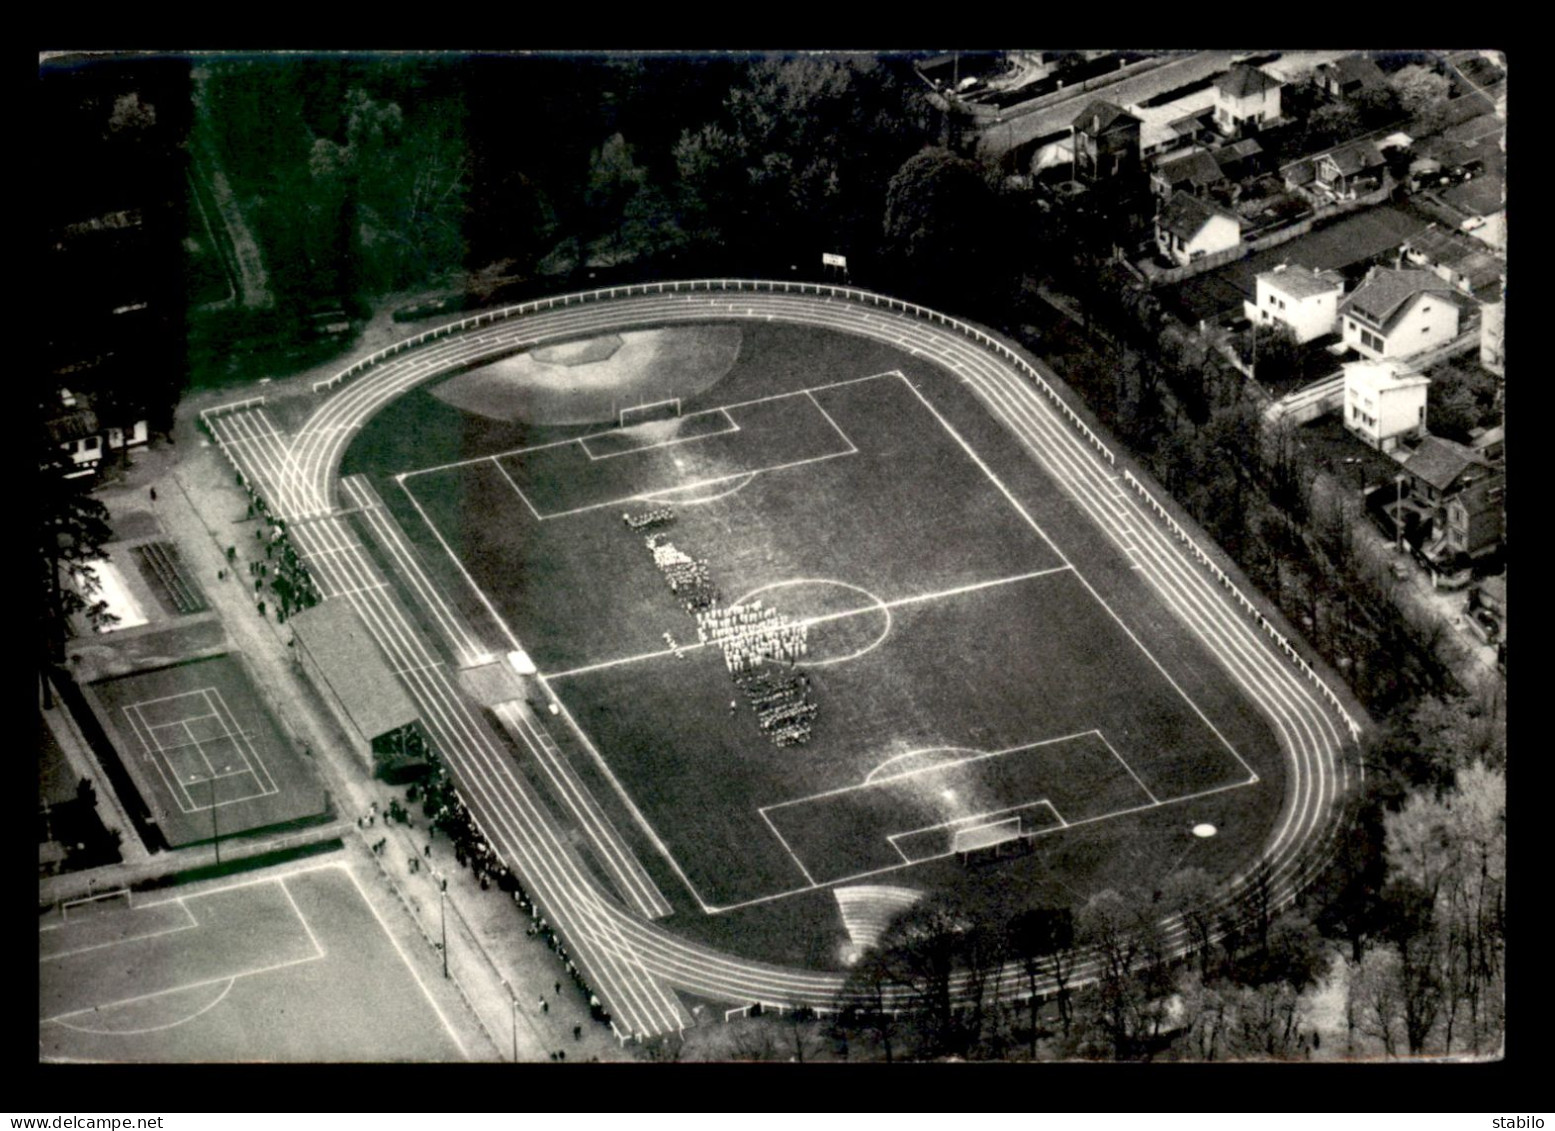 STADES - FOOTBALL - EPINAY-SUR-SEINE (SEINE ST-DENIS) - FETE DE L'ECOLE MUNICIPALE DU SPORT 20 AVRIL 1969 - Stadiums